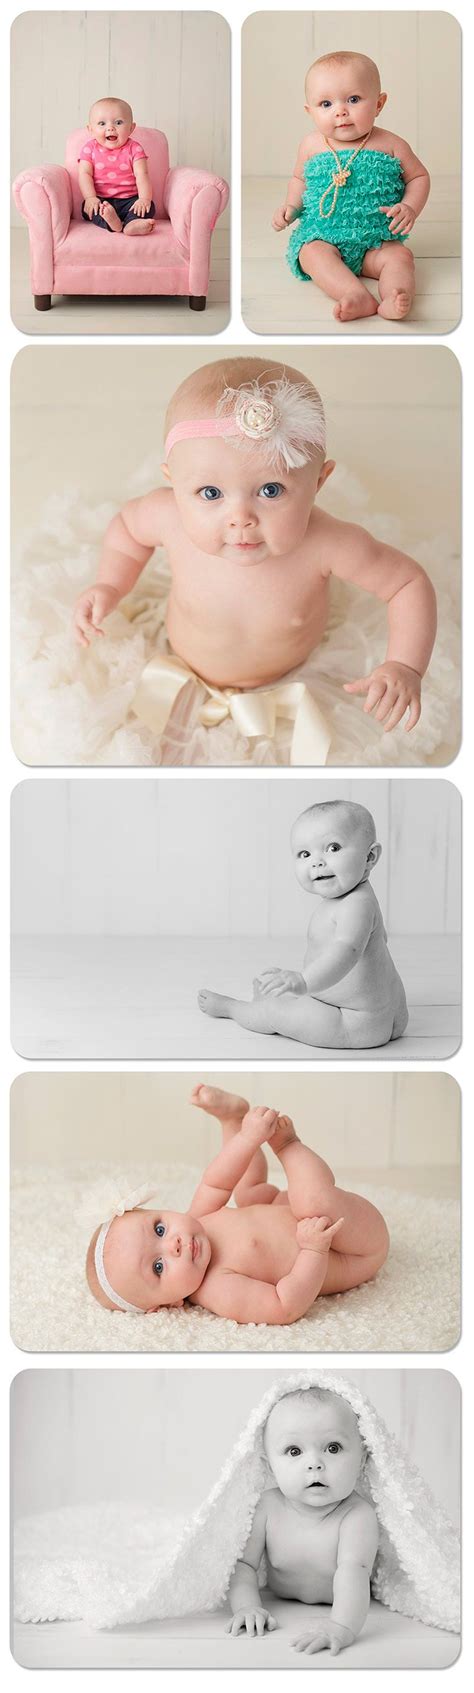 ideias de como tirar fotos de bebê parte 2 dicas da japa fotografia bebe fotografía